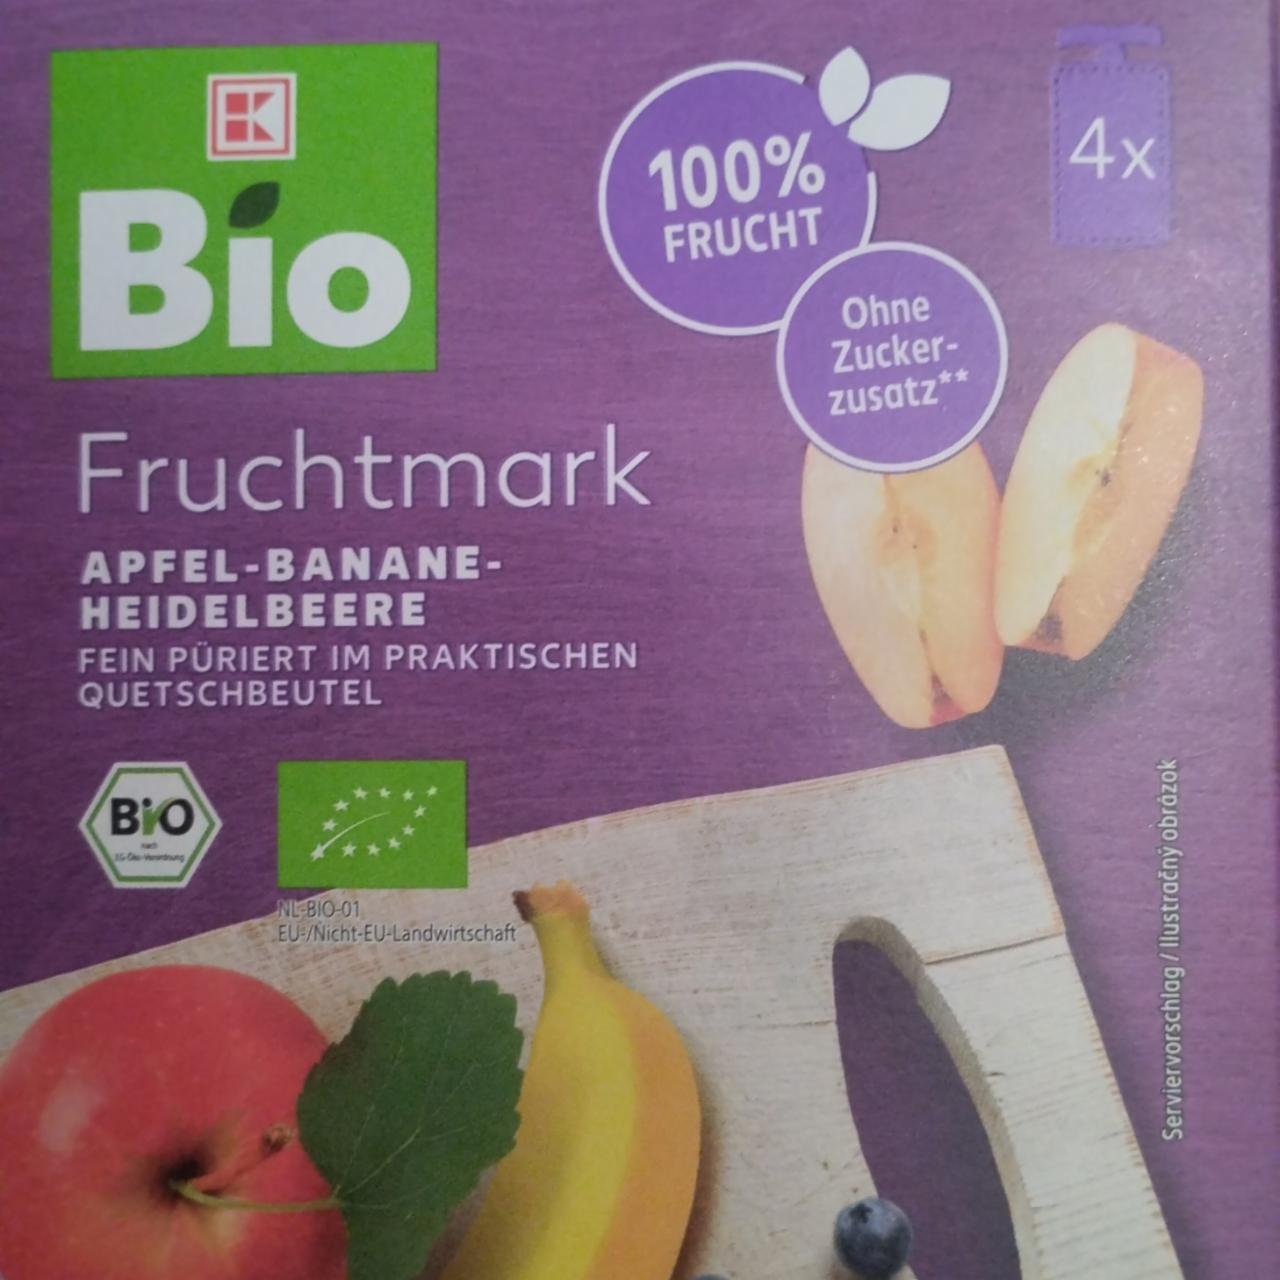 Fotografie - Fruchtmark apfel - banane - heidelbeere K-Bio